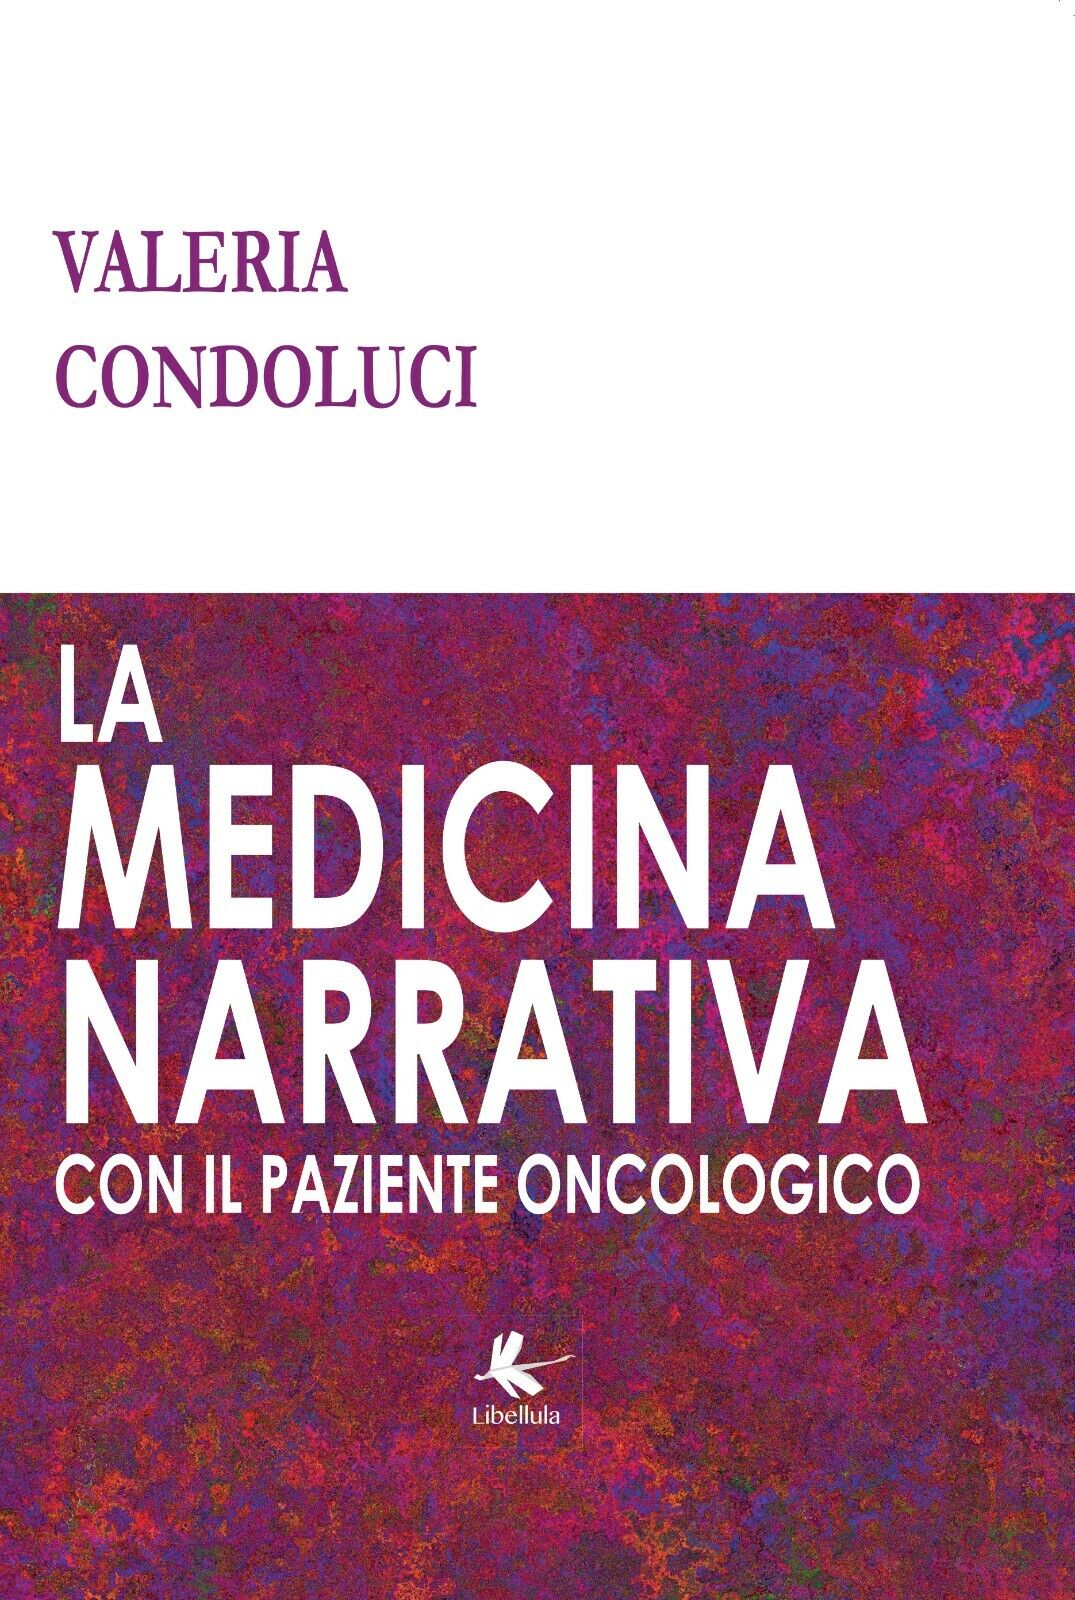 La medicina narrativa con il paziente oncologico di Valeria Condoluci,  2017,  L